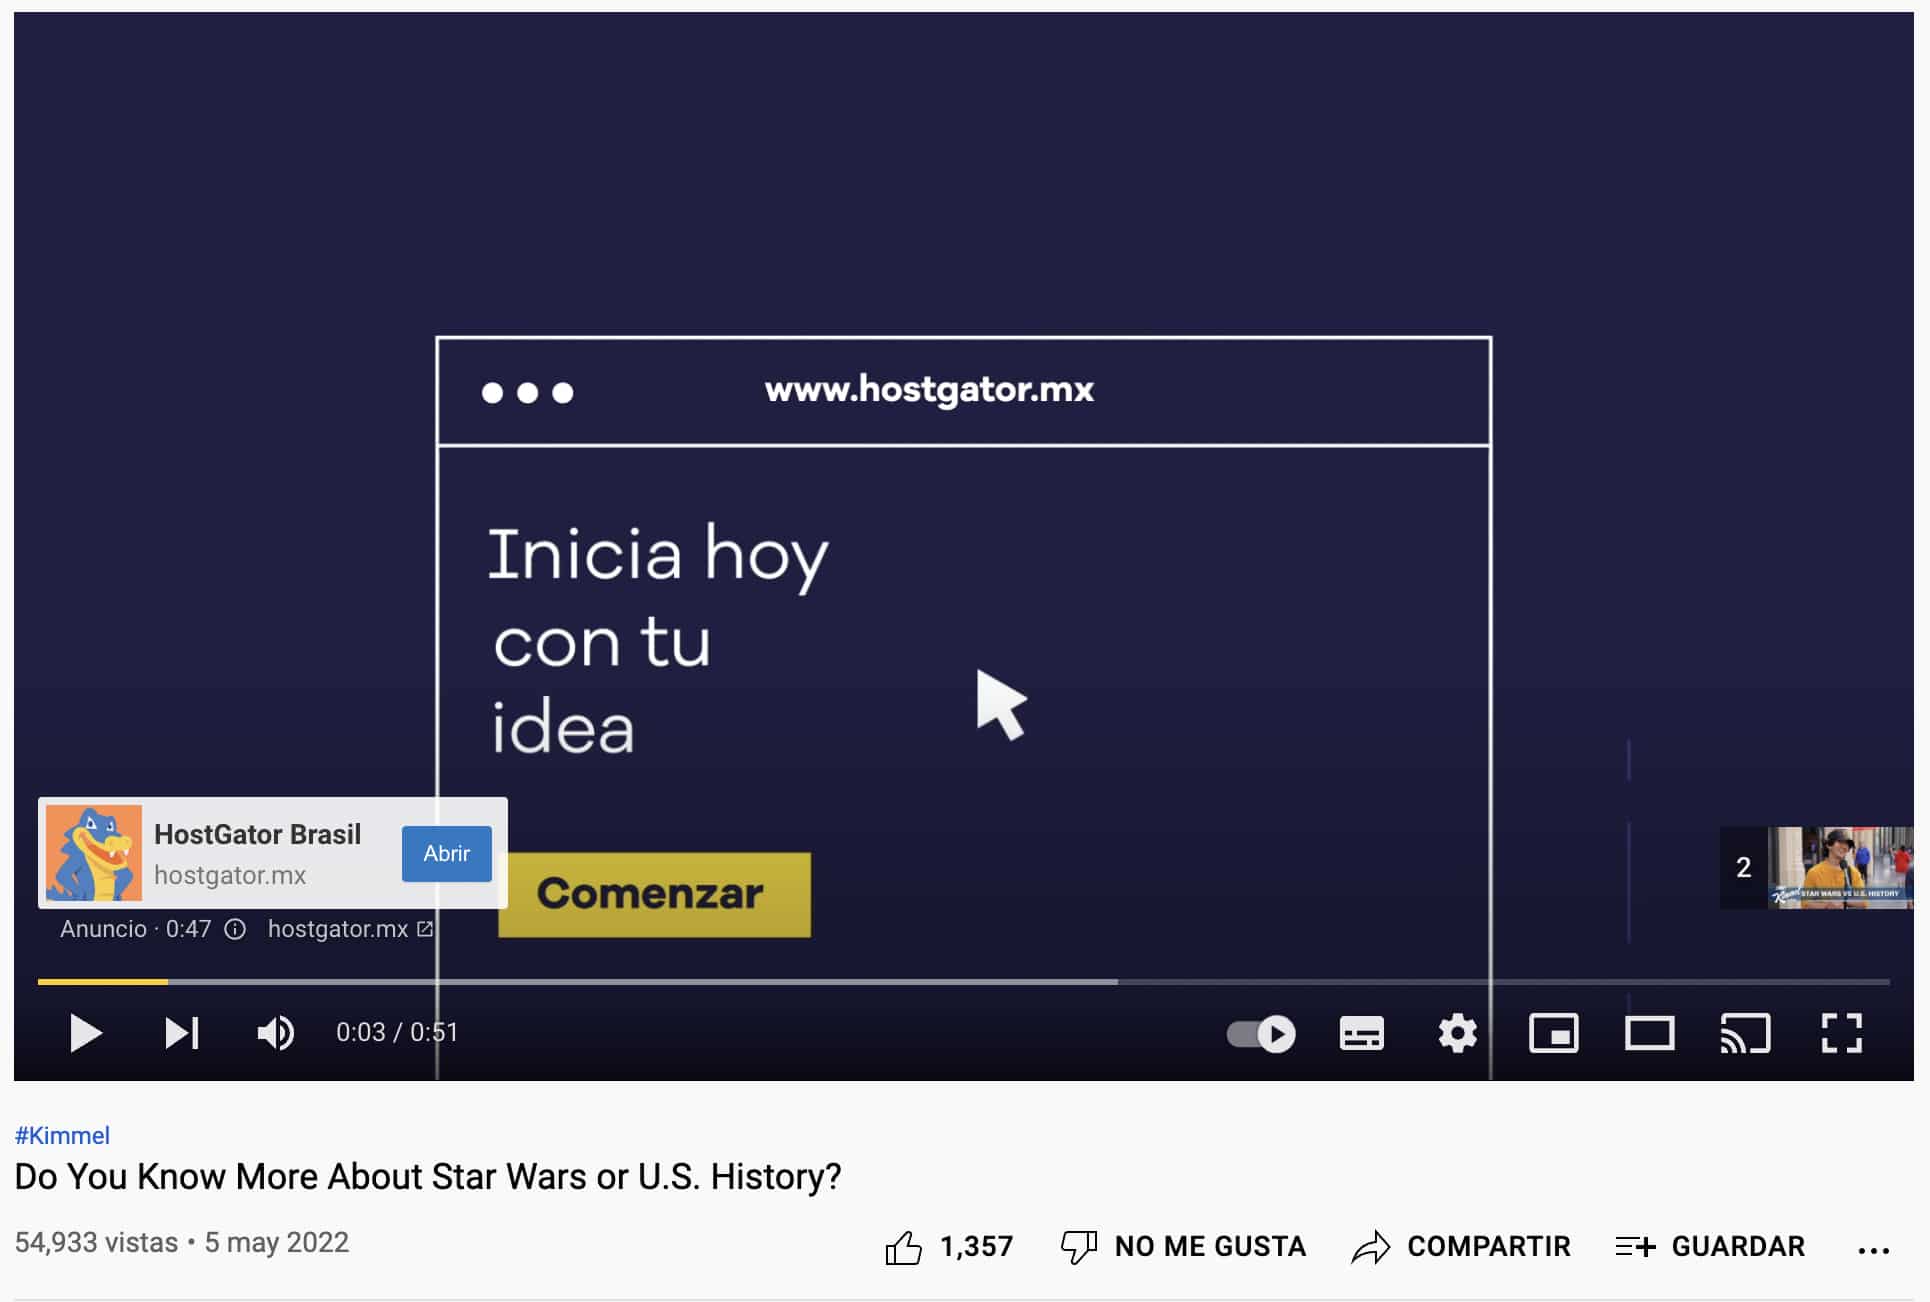 Ejemplo de publicidad digital en video de Hostgator en YouTube